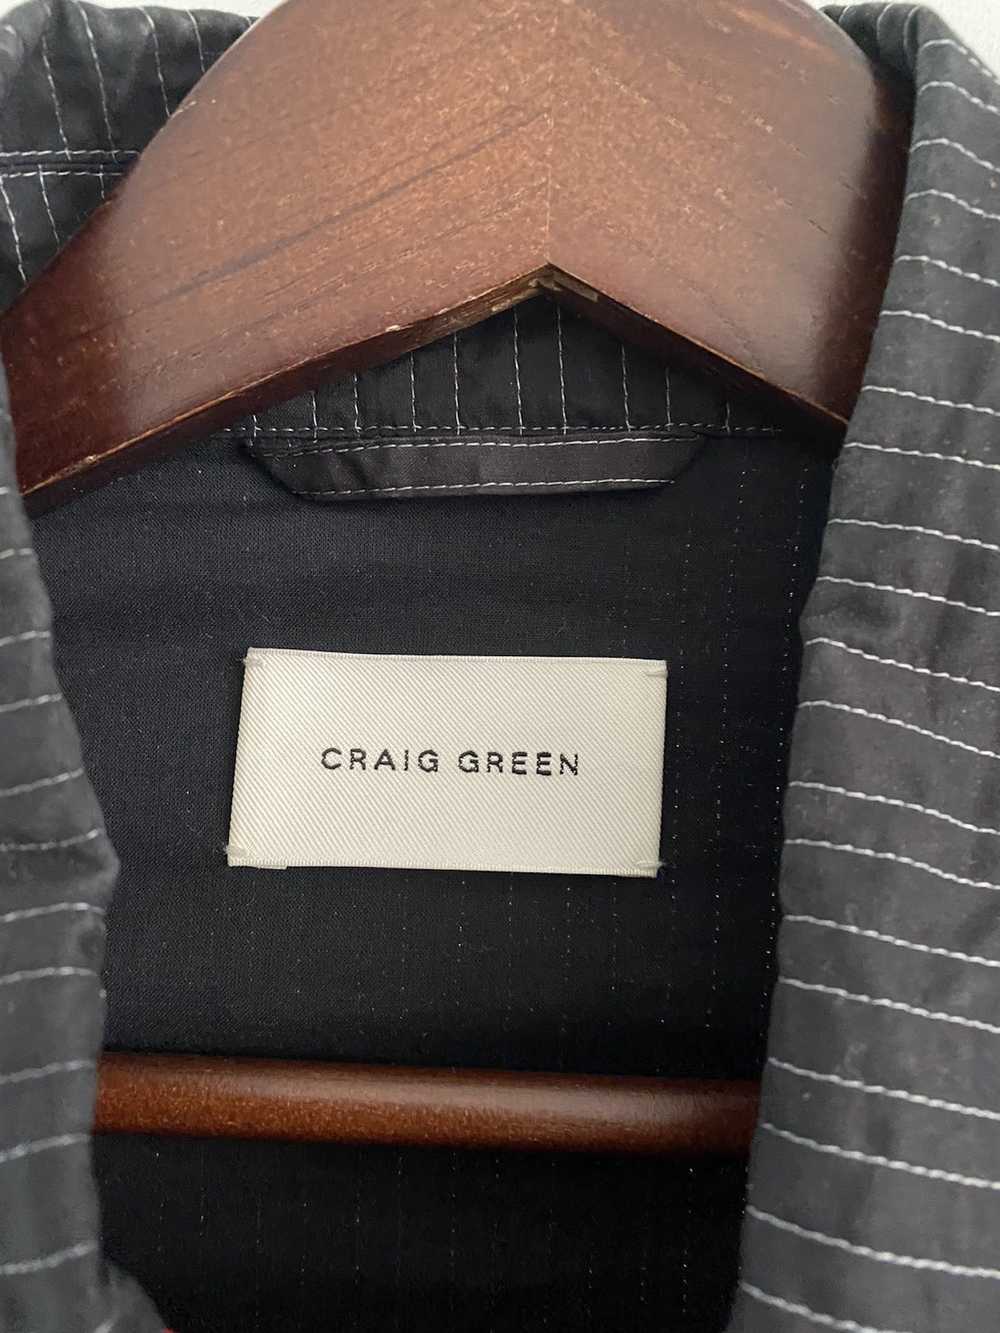 Craig Green Paradise Jacket size small - image 2